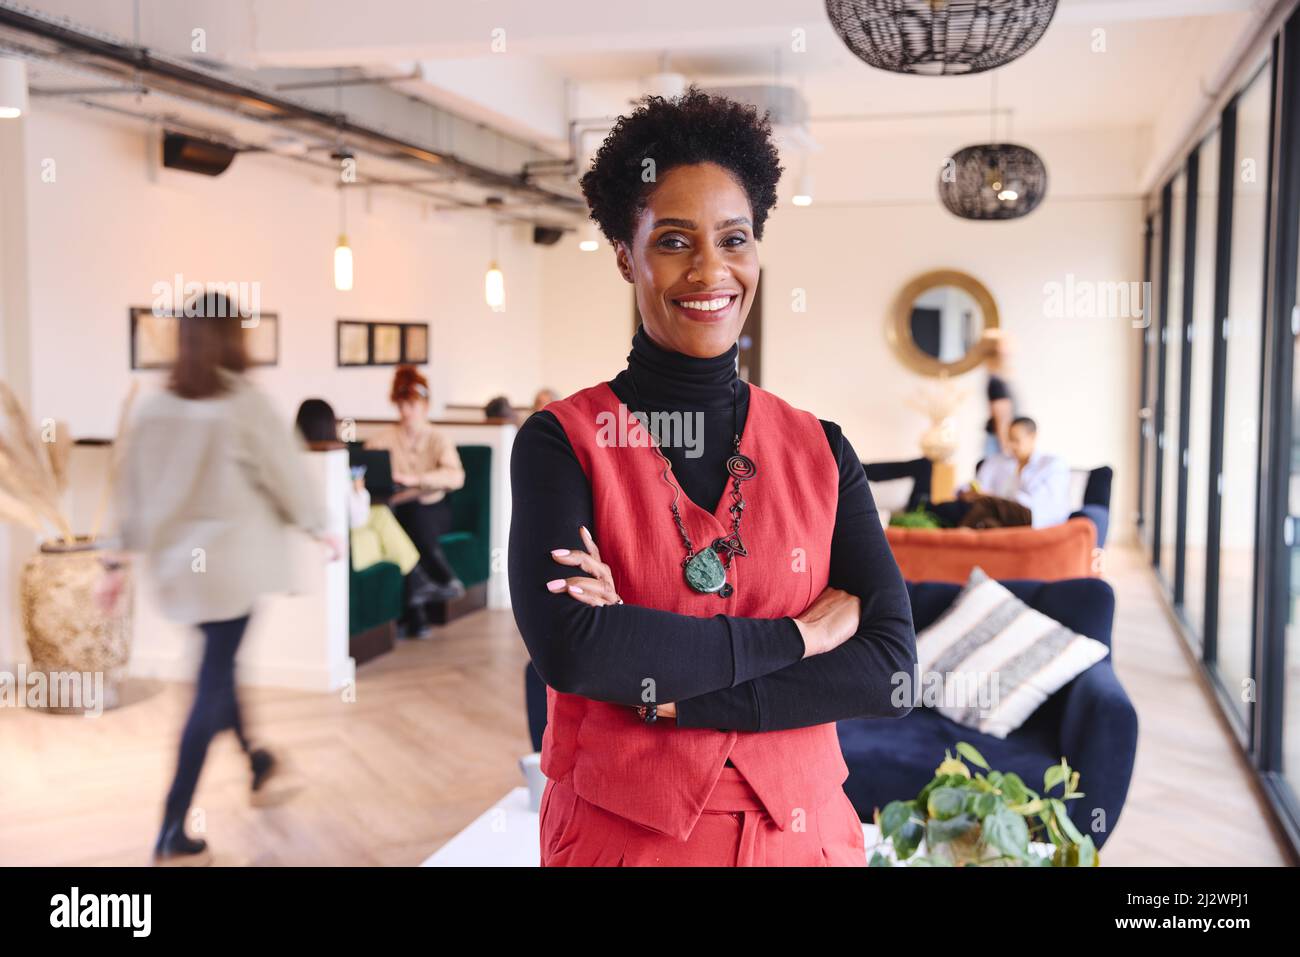 Porträt einer selbstbewussten, reifen schwarzen Geschäftsfrau mit kurzen schwarzen Haaren, die lächelt und mit gefalteten Armen im Coworking Space auf die Kamera blickt Stockfoto